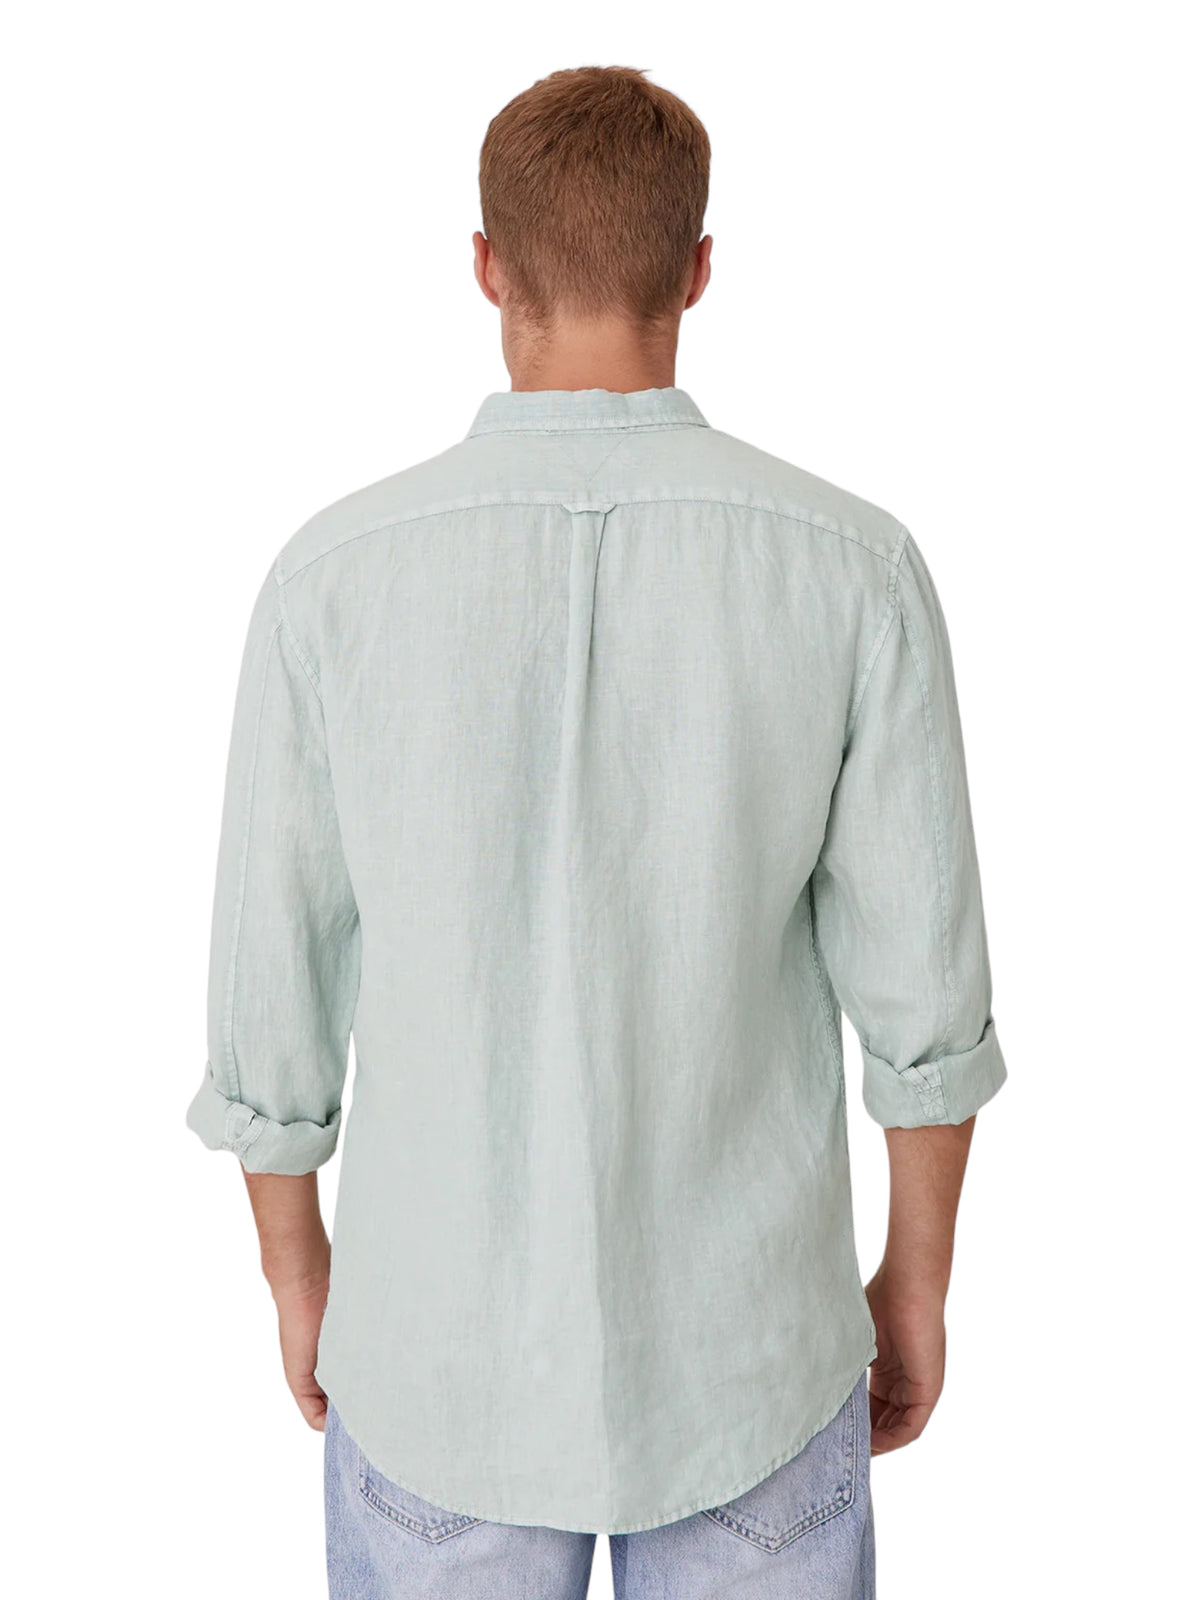 Tennyson Linen Longsleeve Shirt - Jade